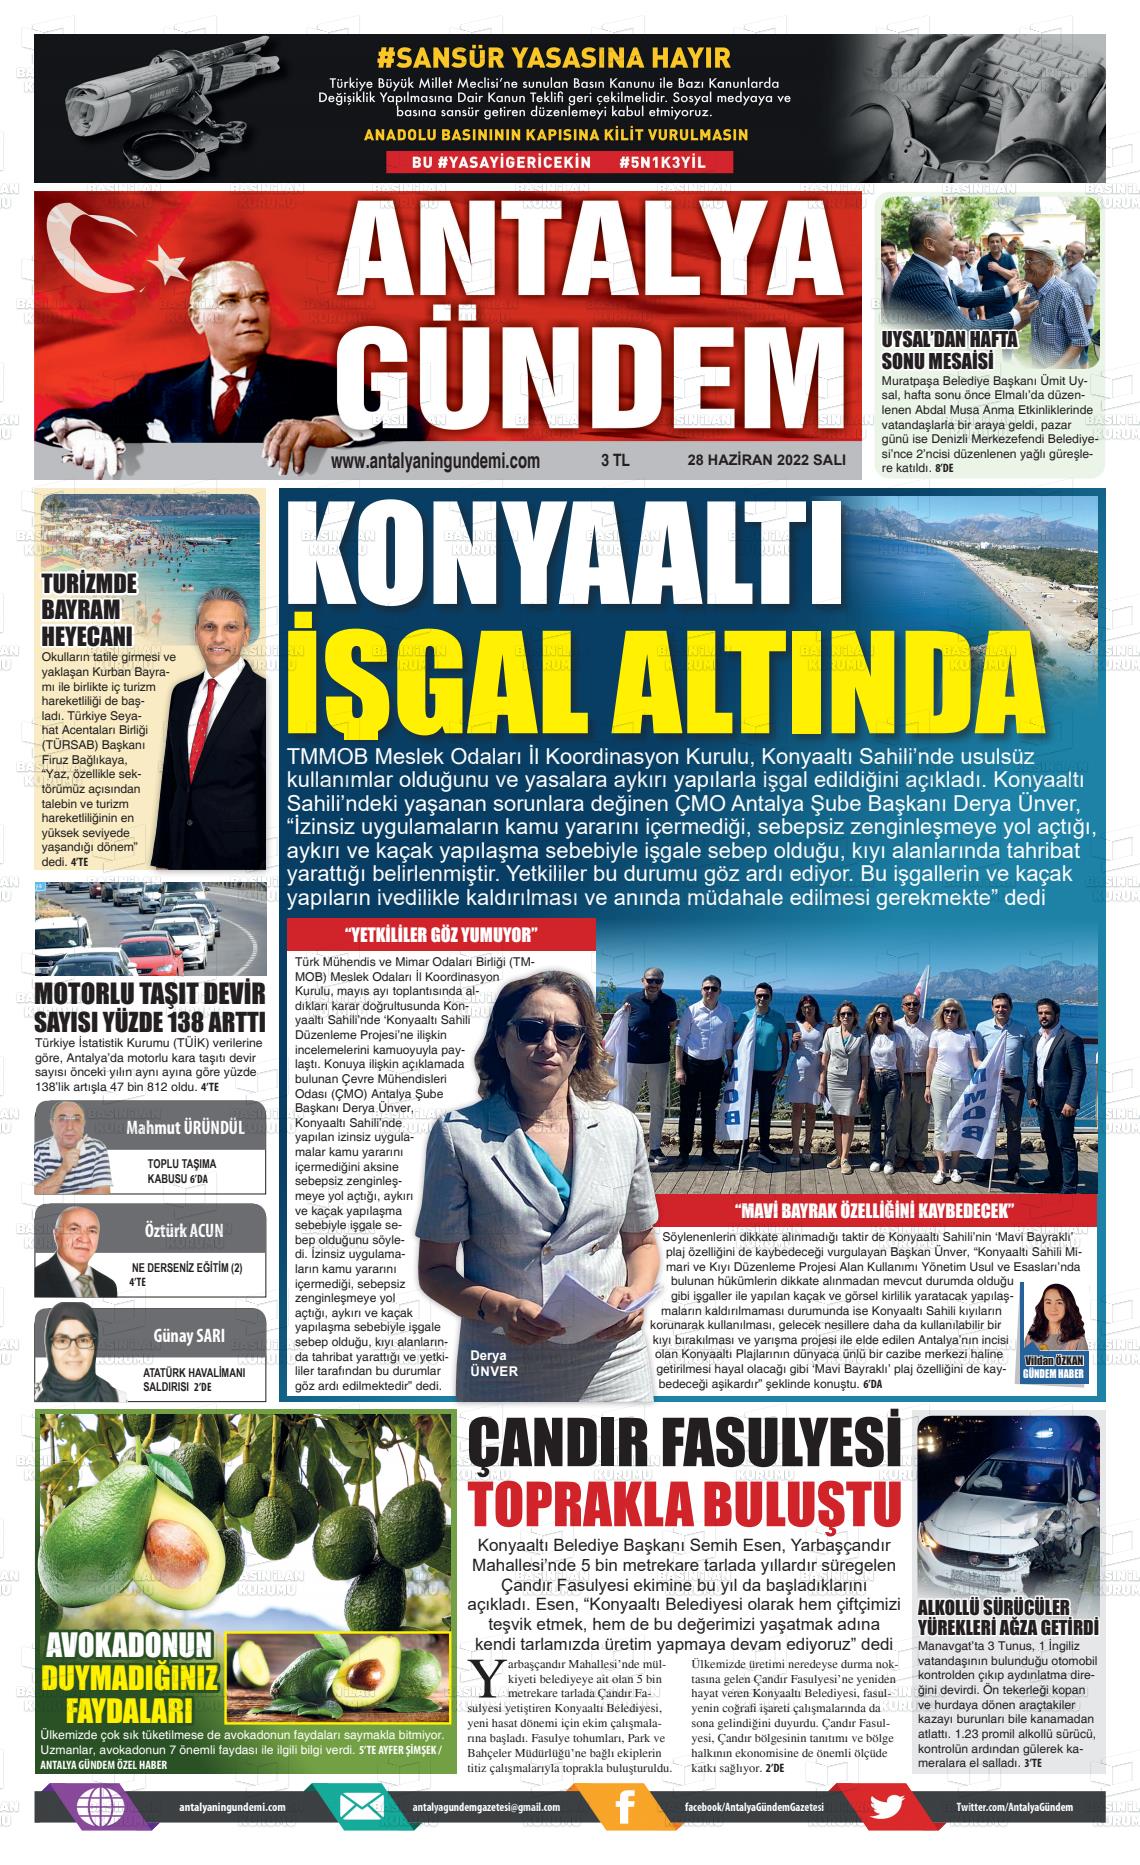 28 Haziran 2022 Antalya'nın Gündemi Gazete Manşeti